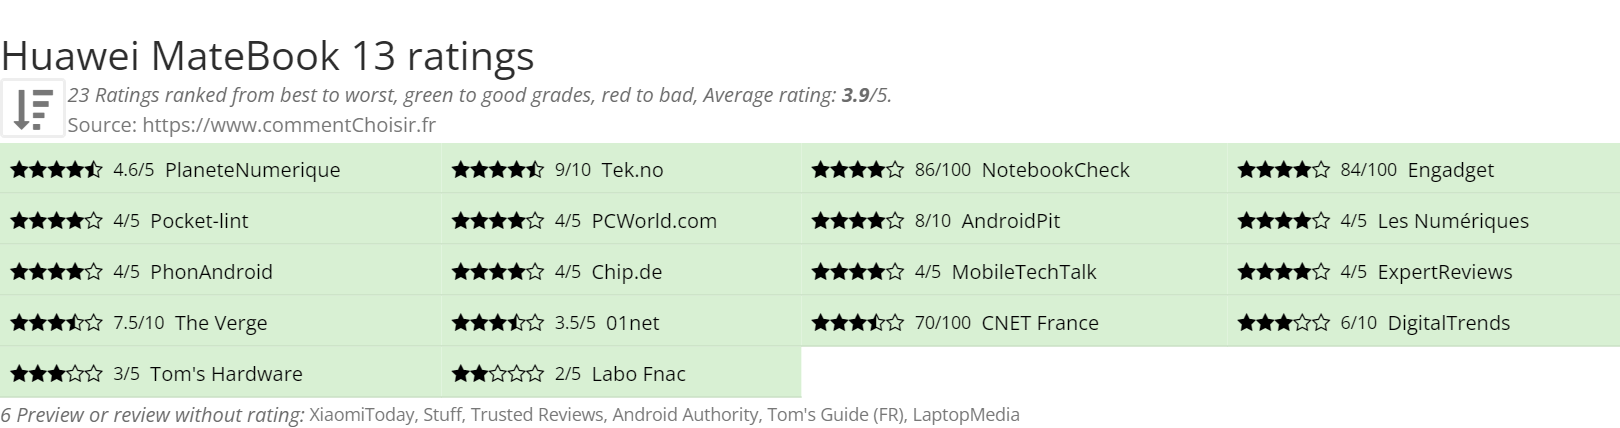 Ratings Huawei MateBook 13